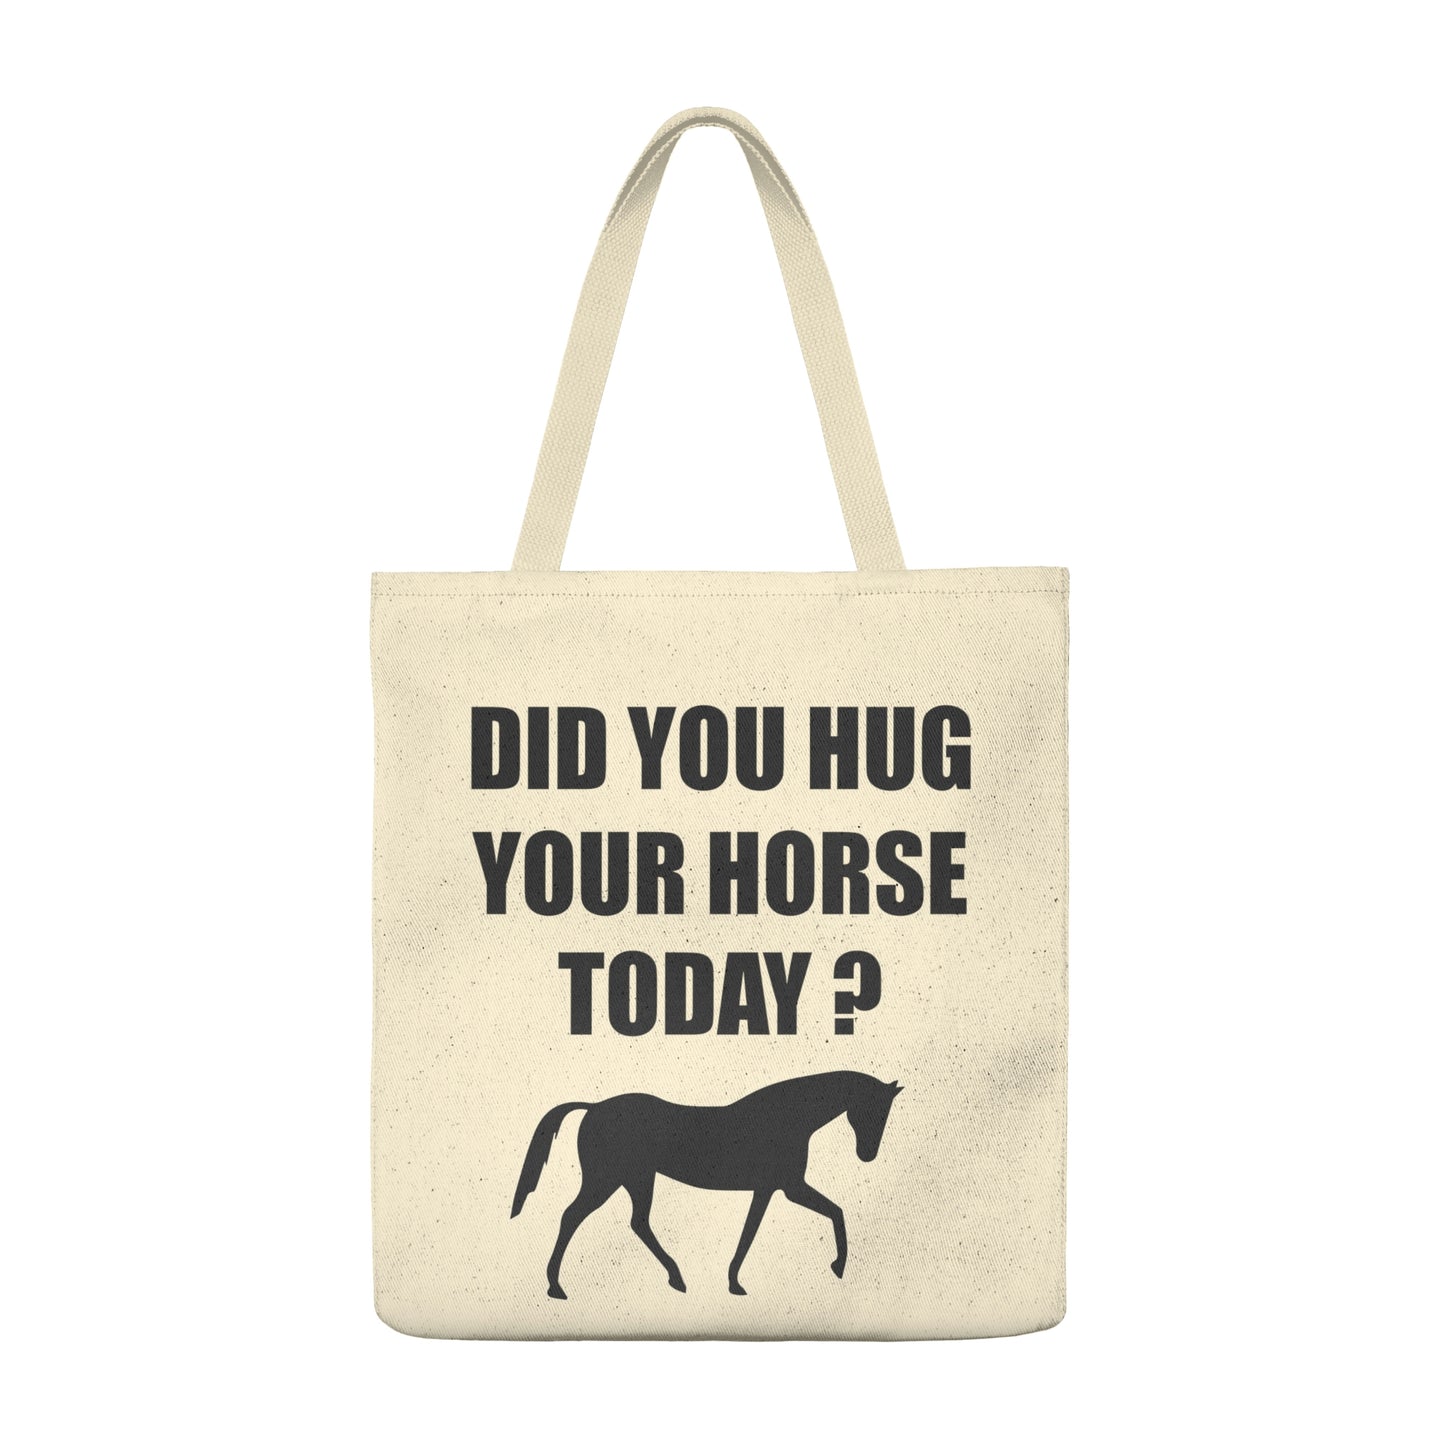 Horse Hugs - Shoulder Tote Bag - Roomy - Black Lettering